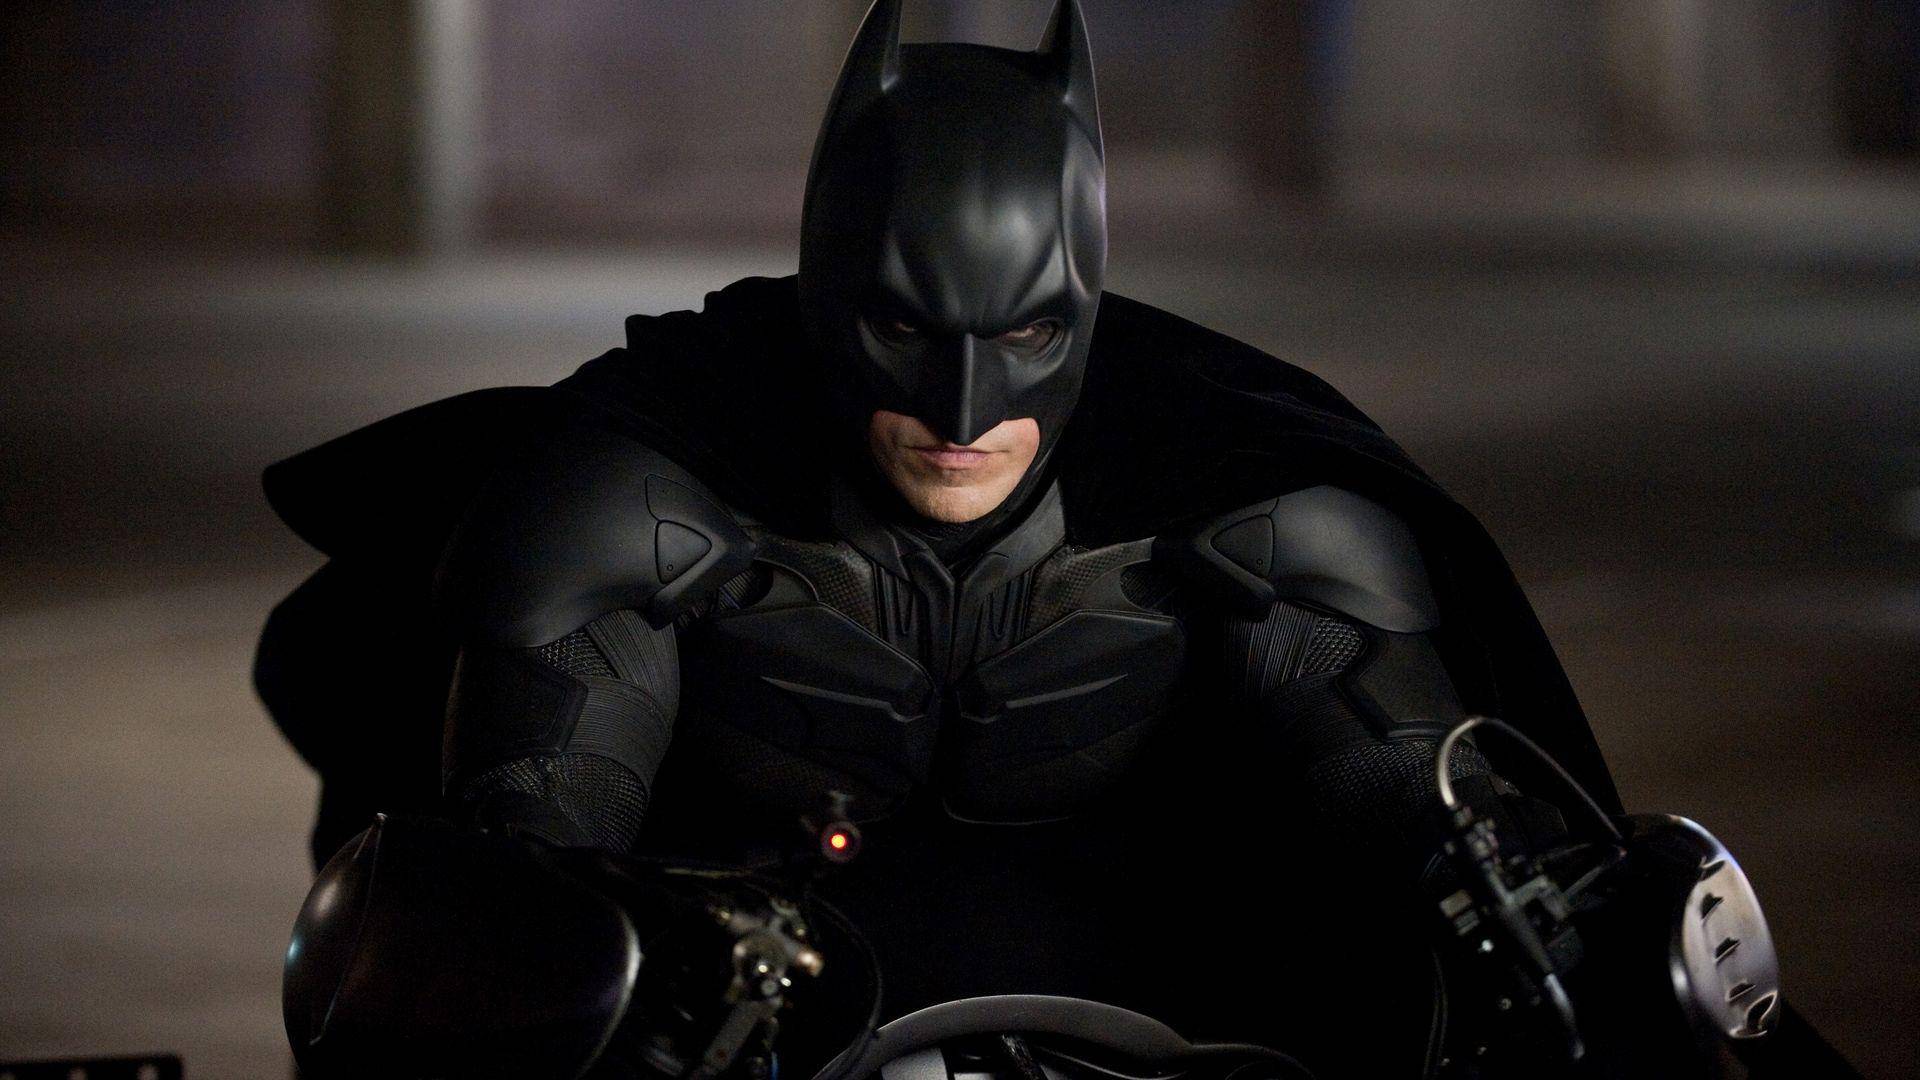 Grátis: oficina relembra trajetória de Batman nos cinemas - Juicy Santos